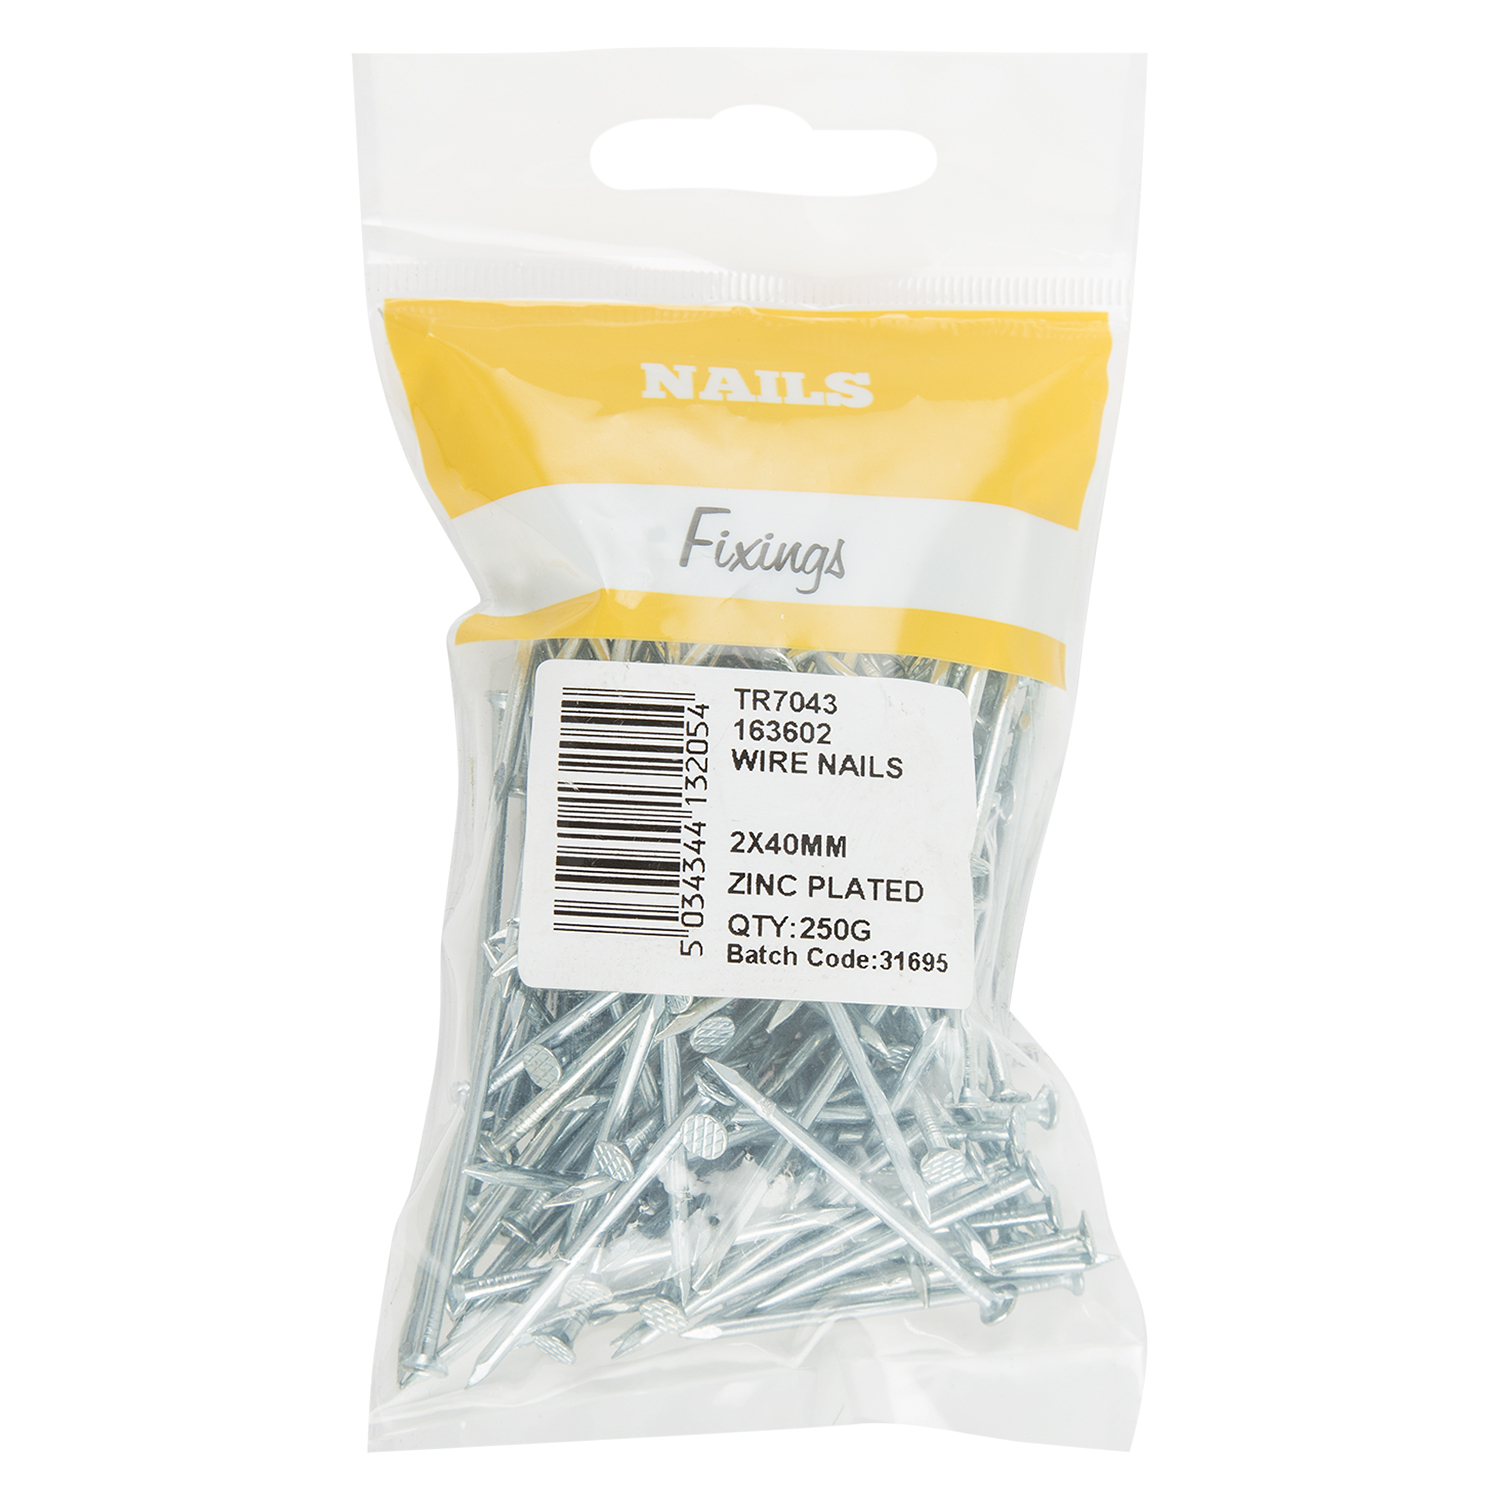 Hiatt 2 x 40mm Zinc Plated Wire Nails 250g Image